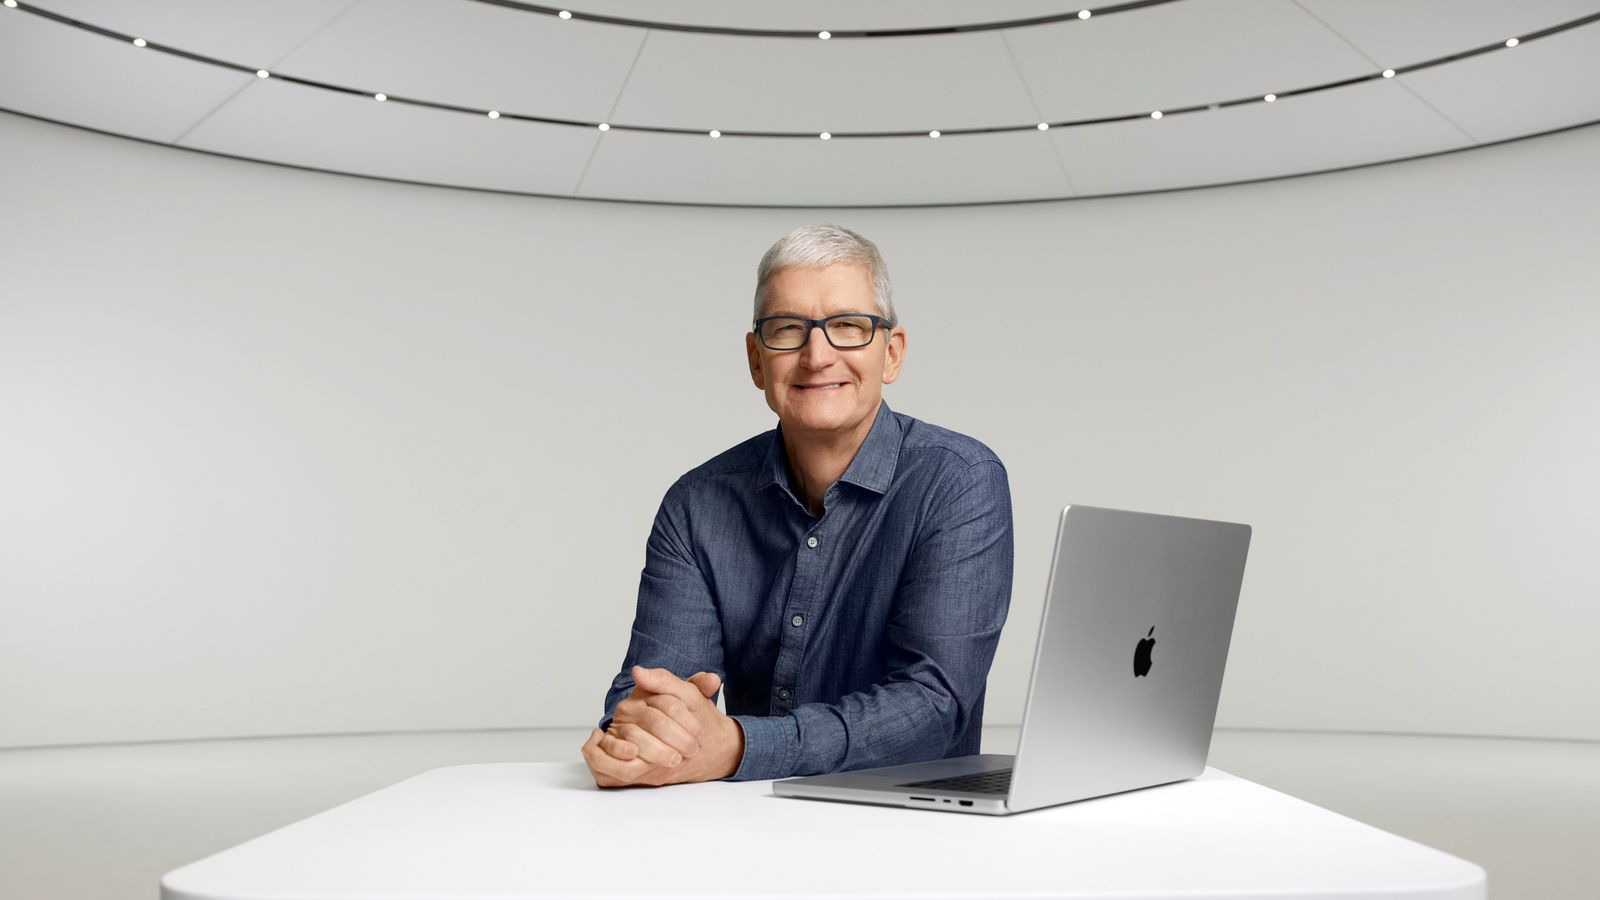 Тим Кук сообщил, что Apple по-прежнему не рассматривает возможность массовых увольнений